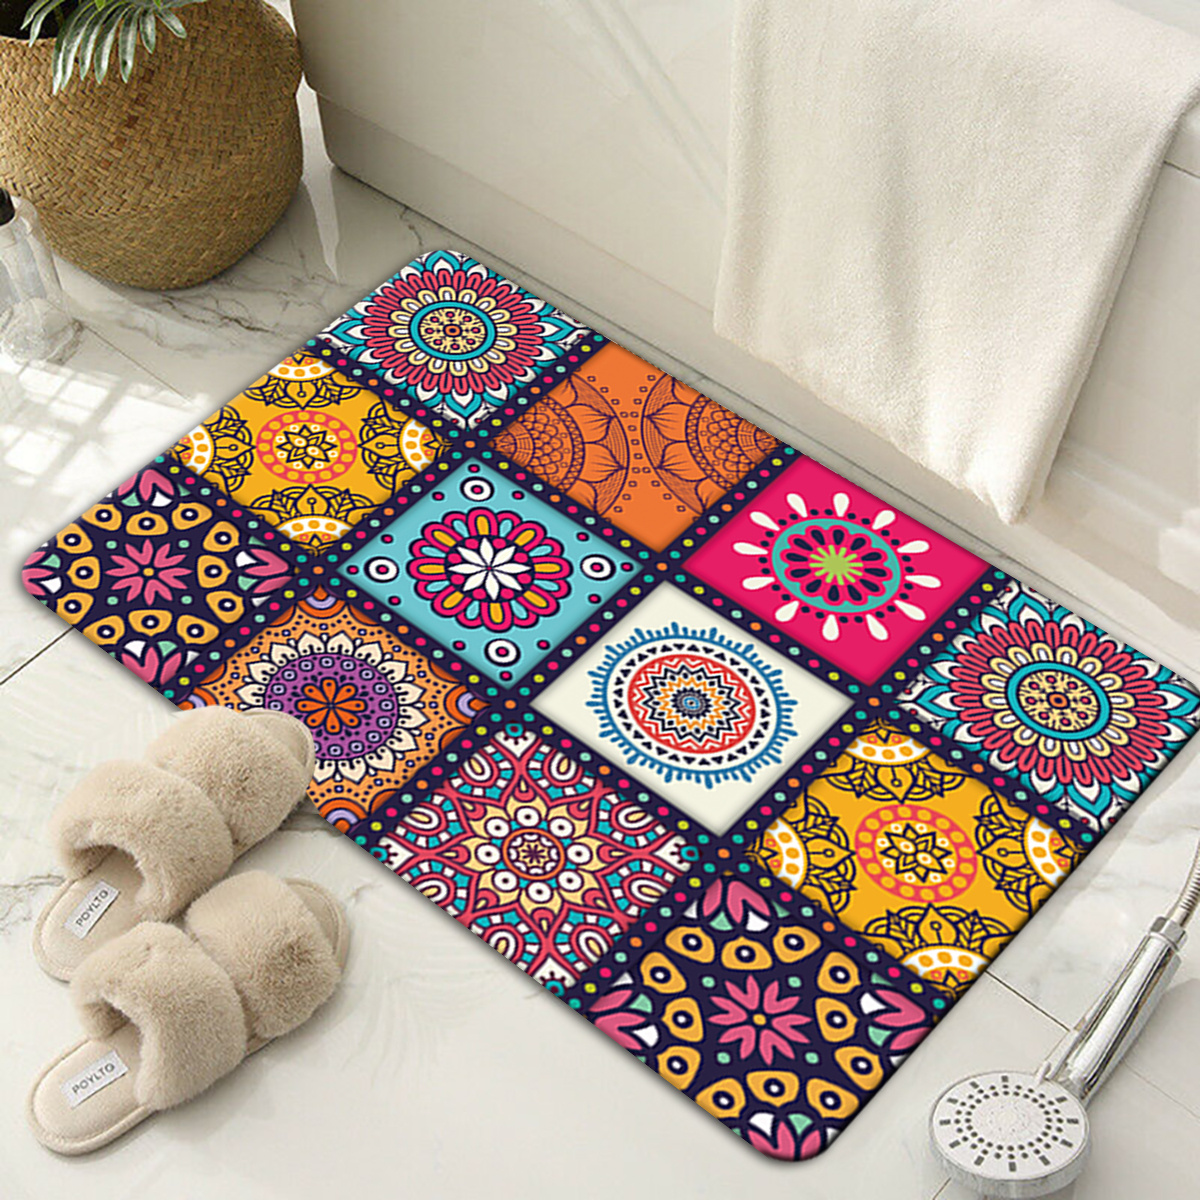 Türkischer Fußmatten Teppich bei Pamono kaufen